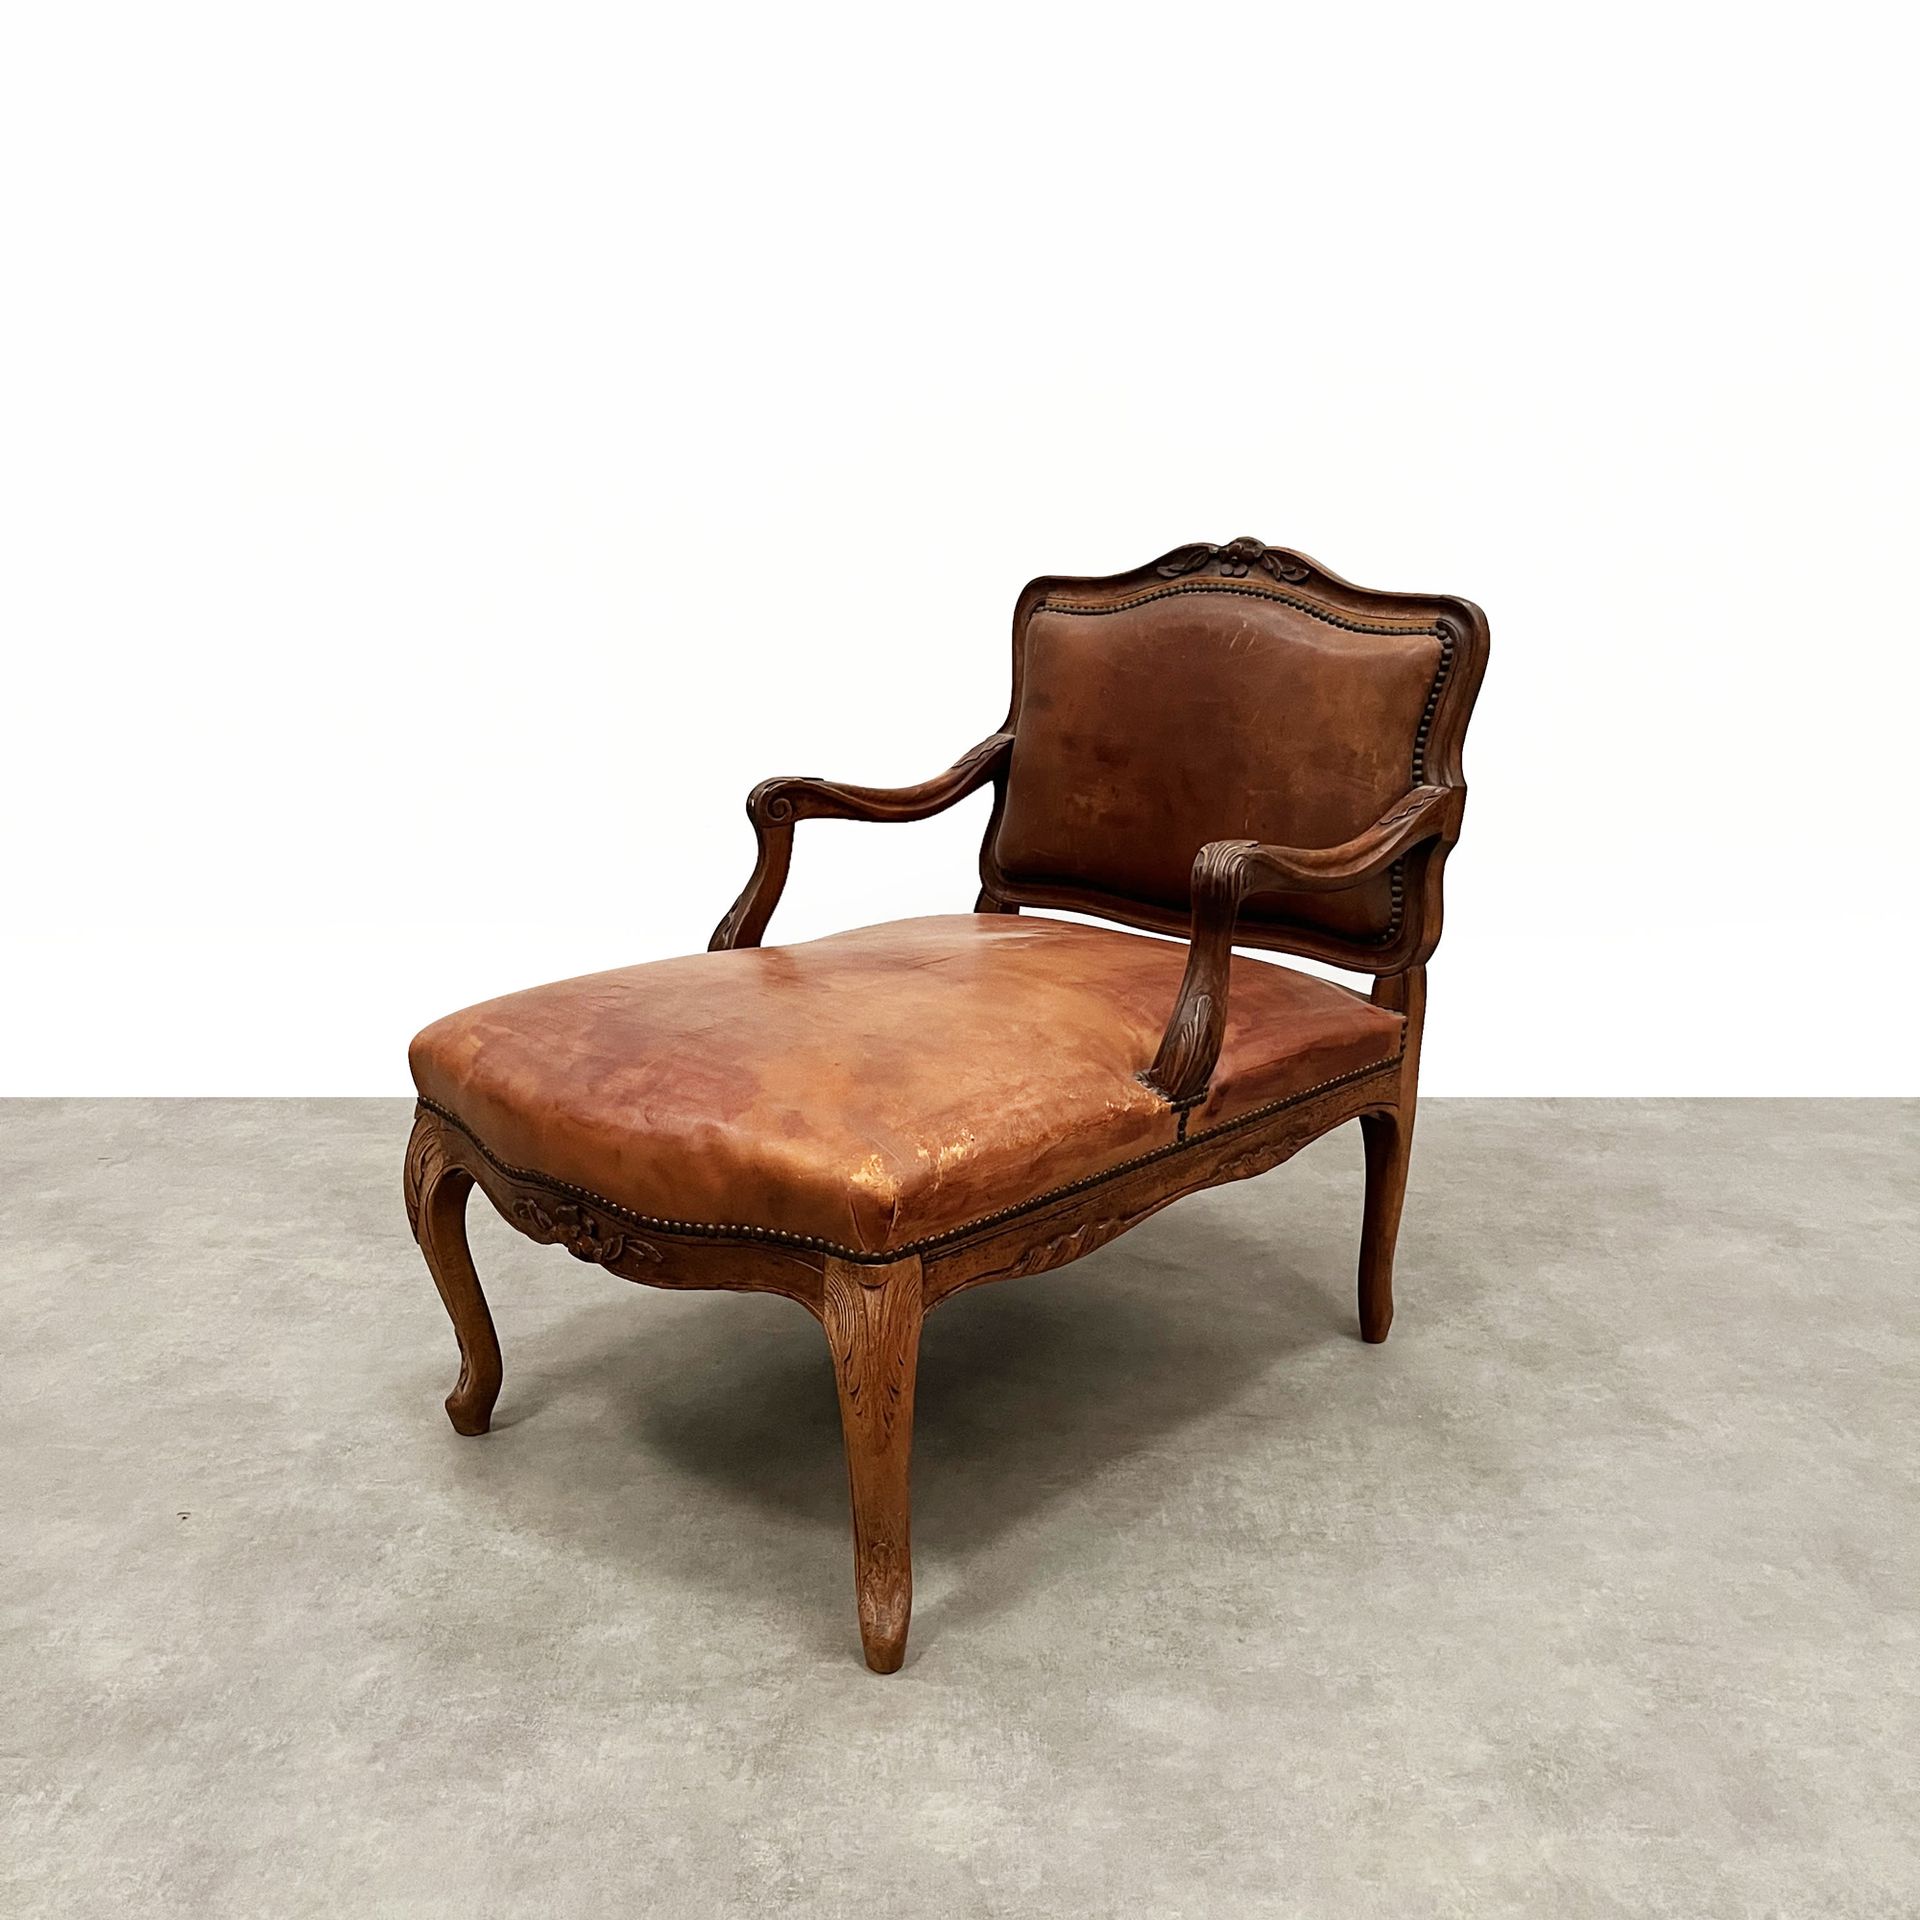 Null 模制和雕刻的天然木制贵妃椅，棕色皮革装饰，路易十五风格 高_81厘米，宽_62厘米，深_83厘米